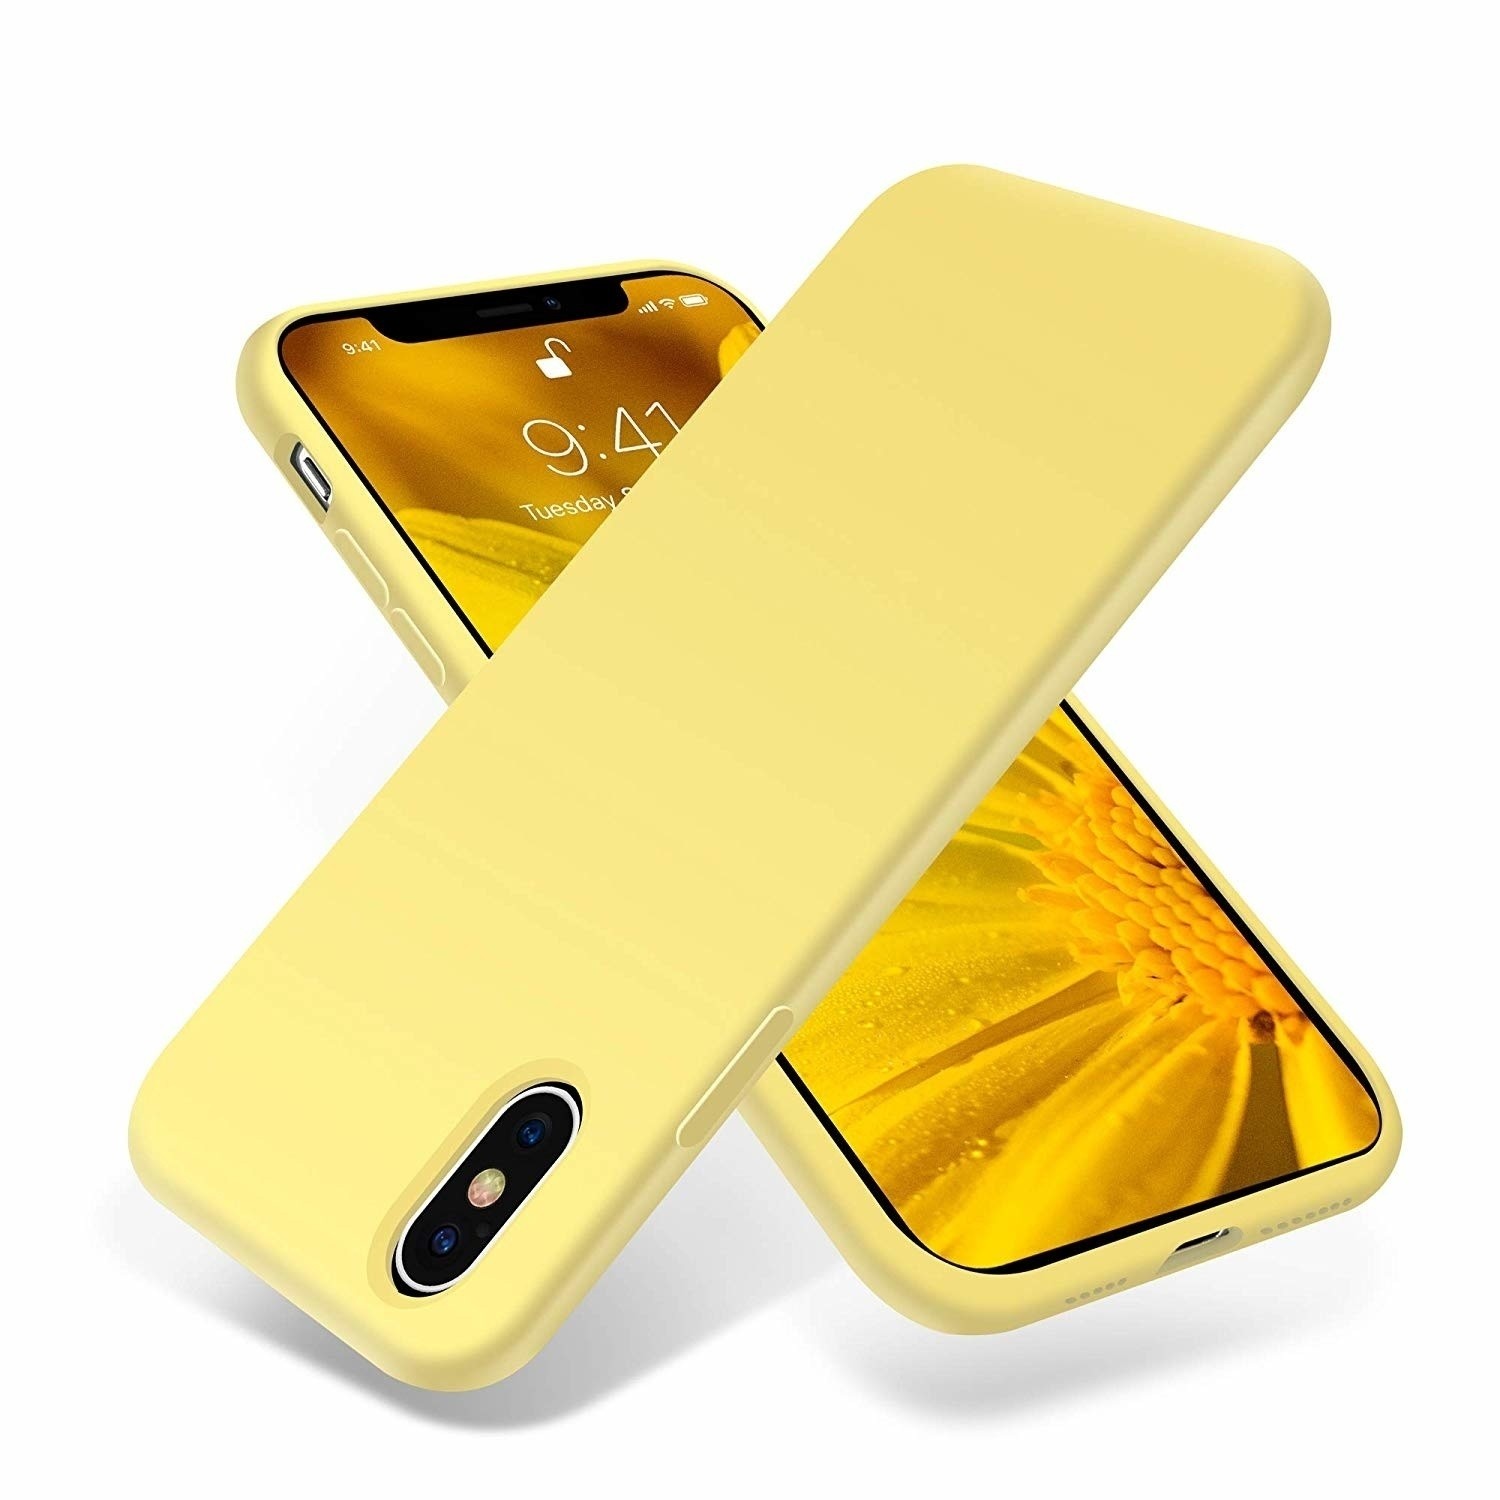 Funda de silicona para el iPhone XS Max - Amarillo canario - Empresas -  Apple (ES)